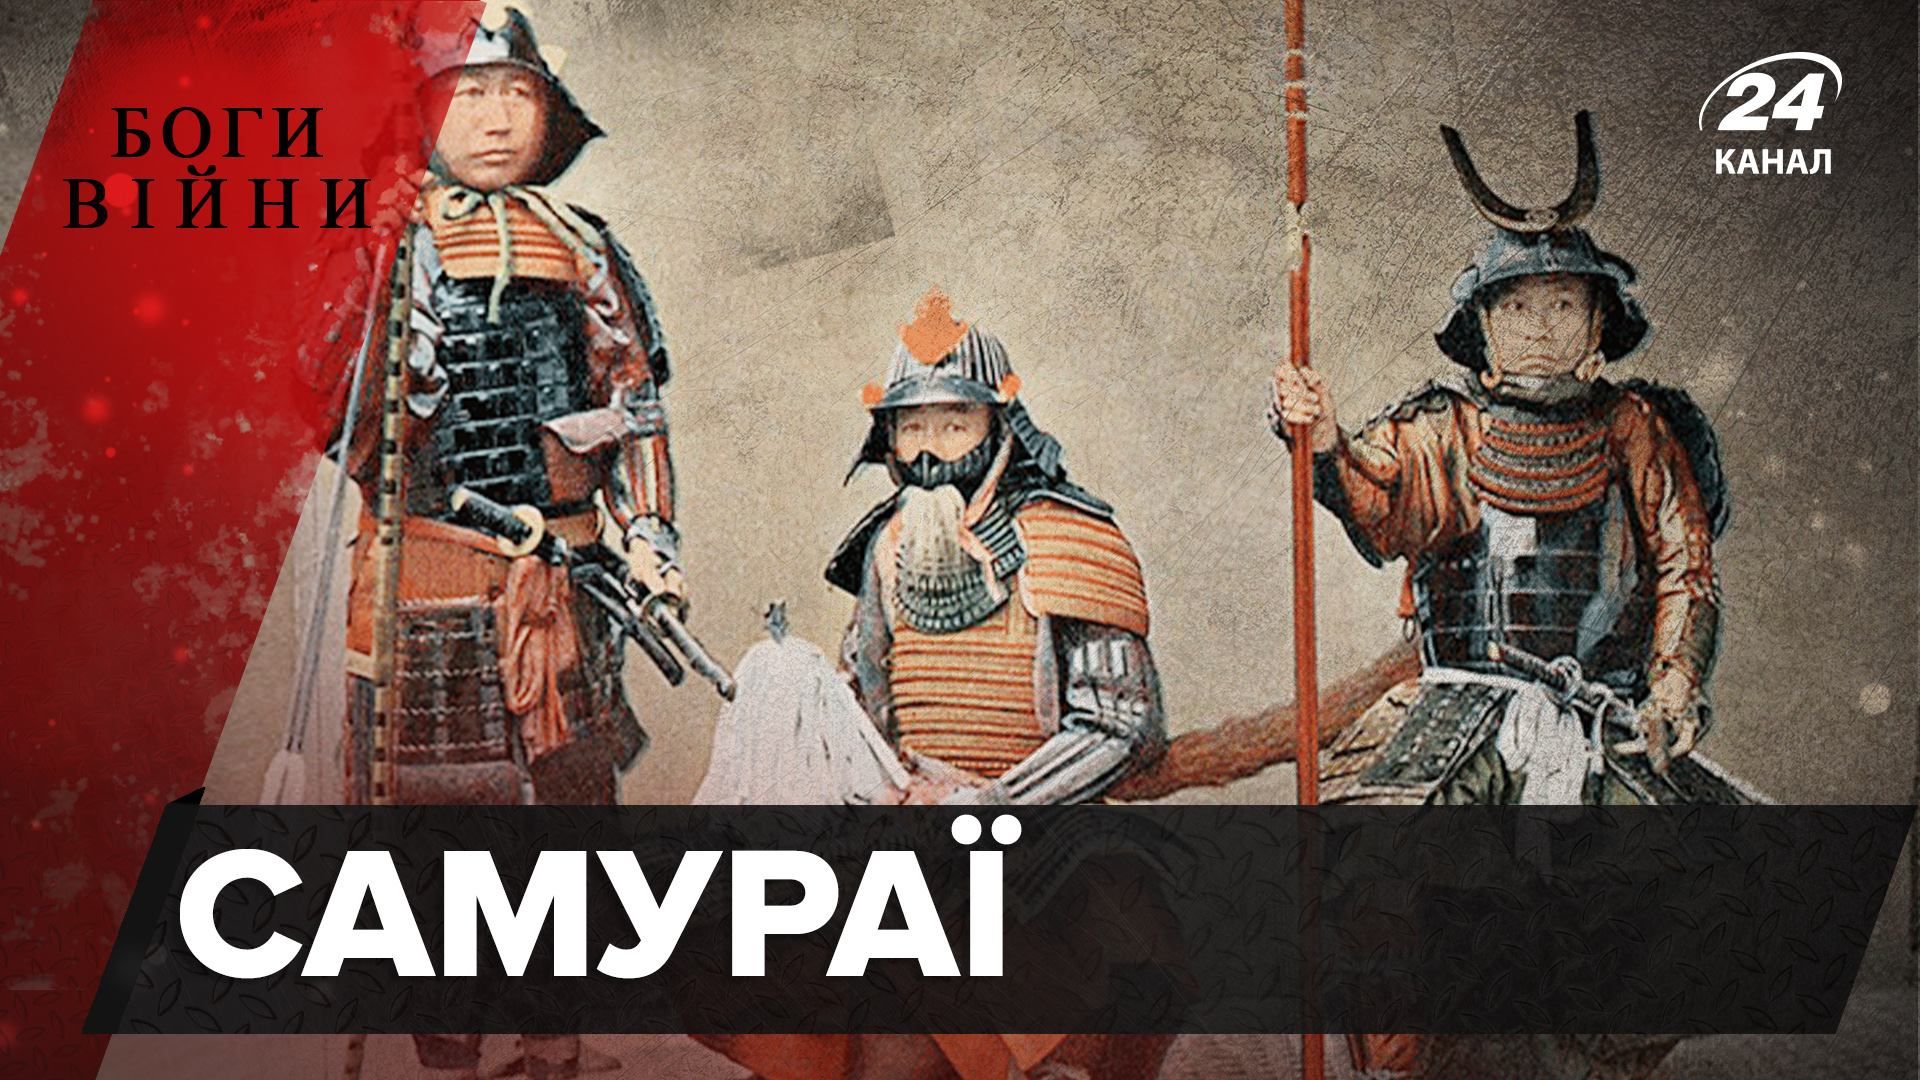 Голову убитого человека несли хозяину: действительно ли самураи были воинами чести